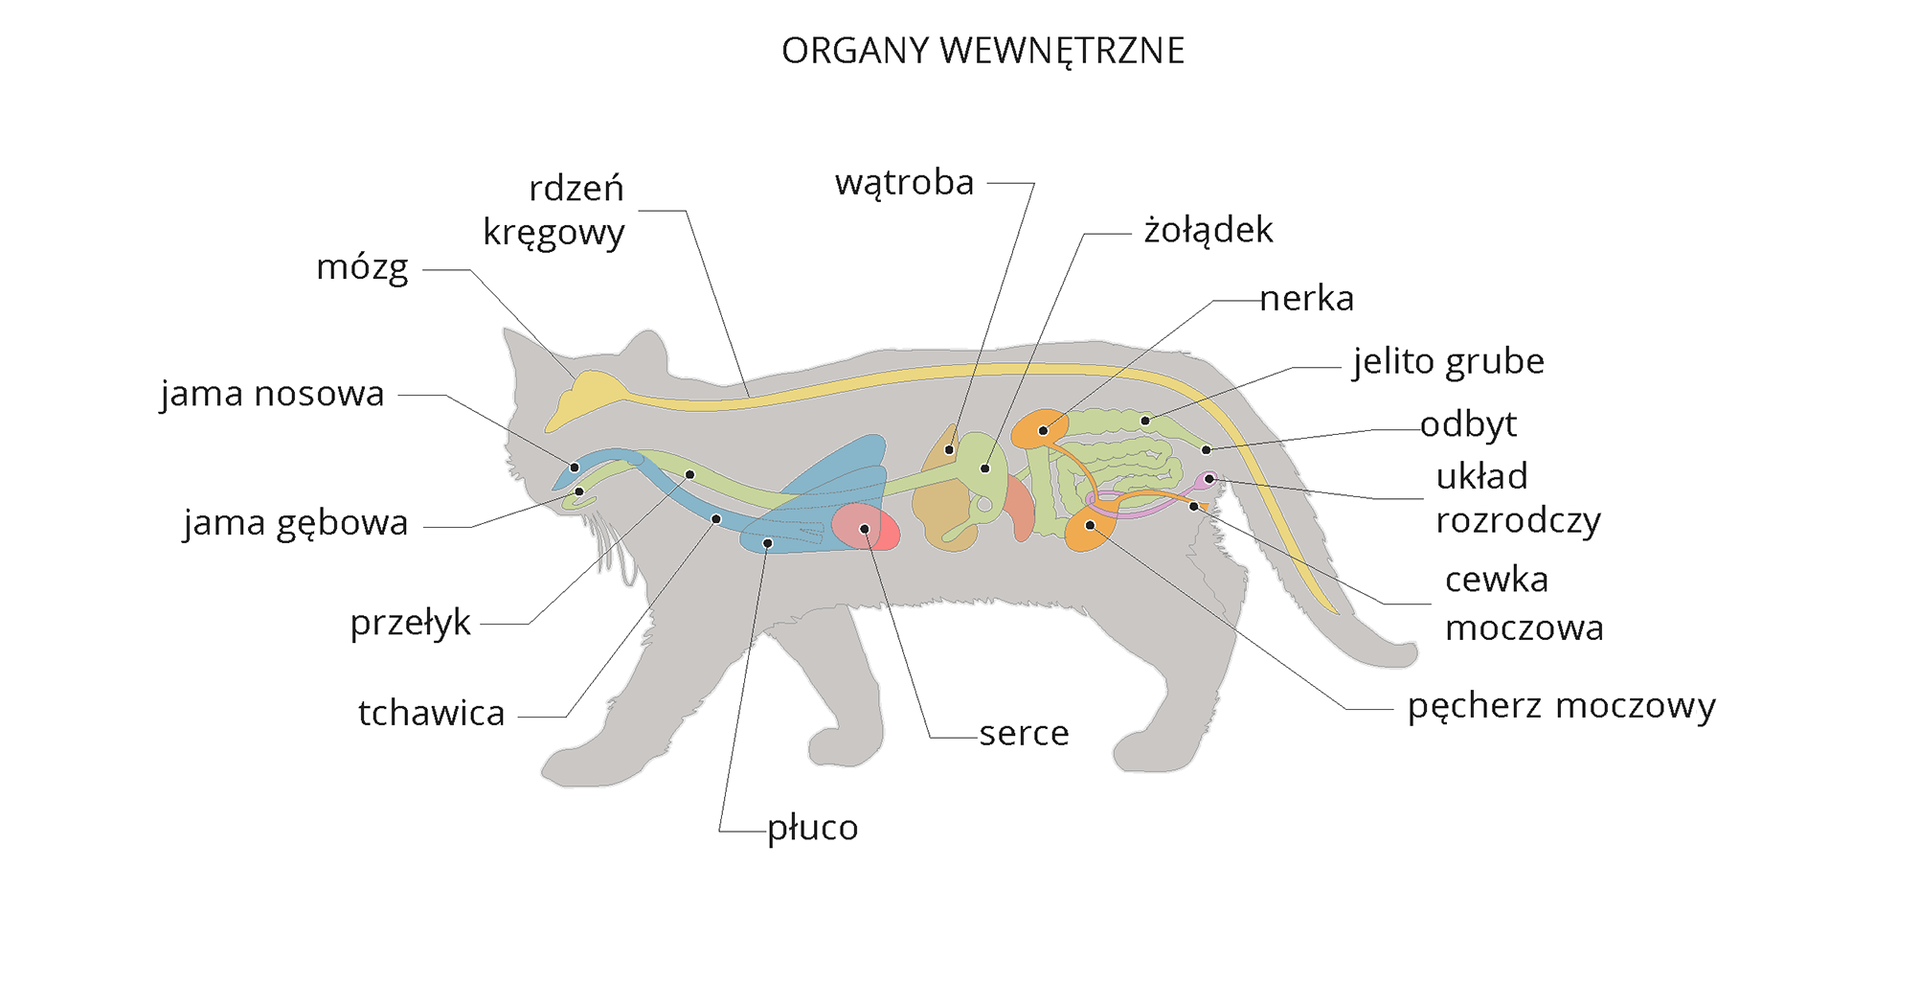 Ilustracja przedstawia szarą sylwetkę kota z wrysowanymi narządami wewnętrznymi. Od góry wzdłuż grzbietu żółty mózg i rdzeń kręgowy. Od głowy z lewej niebieskie narządy oddechowe: jama nosowa, tchawica, płuco. Obok na zielono układ pokarmowy: jama gębowa, przełyk, żołądek, jelito, odbyt. W centrum różowe serce, obok brązowa wątroba. Ukosem pomarańczowa nerka, połączona z pęcherzem, z którego wychodzi cewka moczowa. Fioletowo zaznaczono układ rozrodczy.